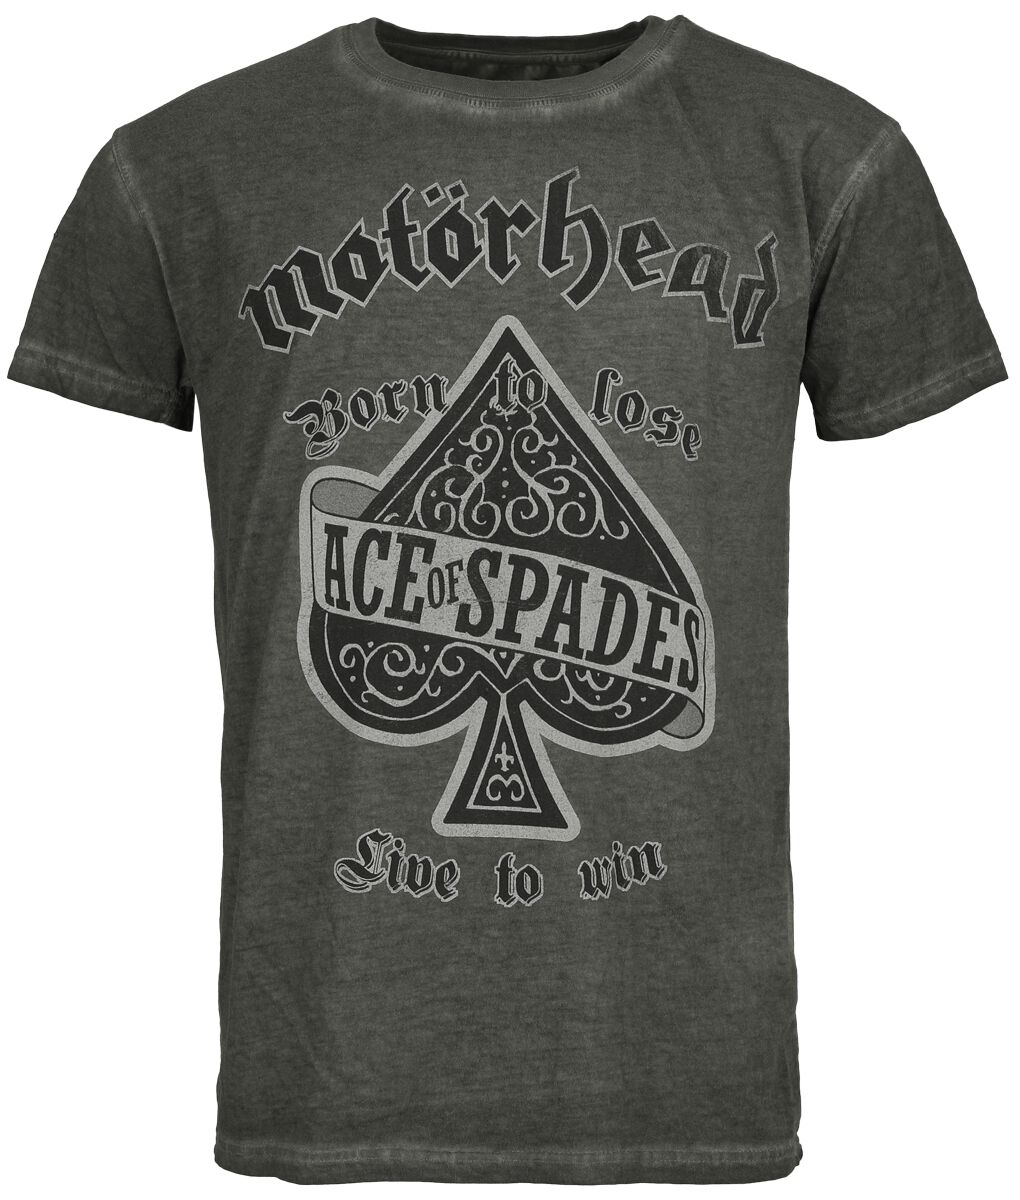 Motörhead T-Shirt - Ace Of Spades - S bis 4XL - für Männer - Größe XL - anthrazit  - Lizenziertes Merchandise! von Motörhead